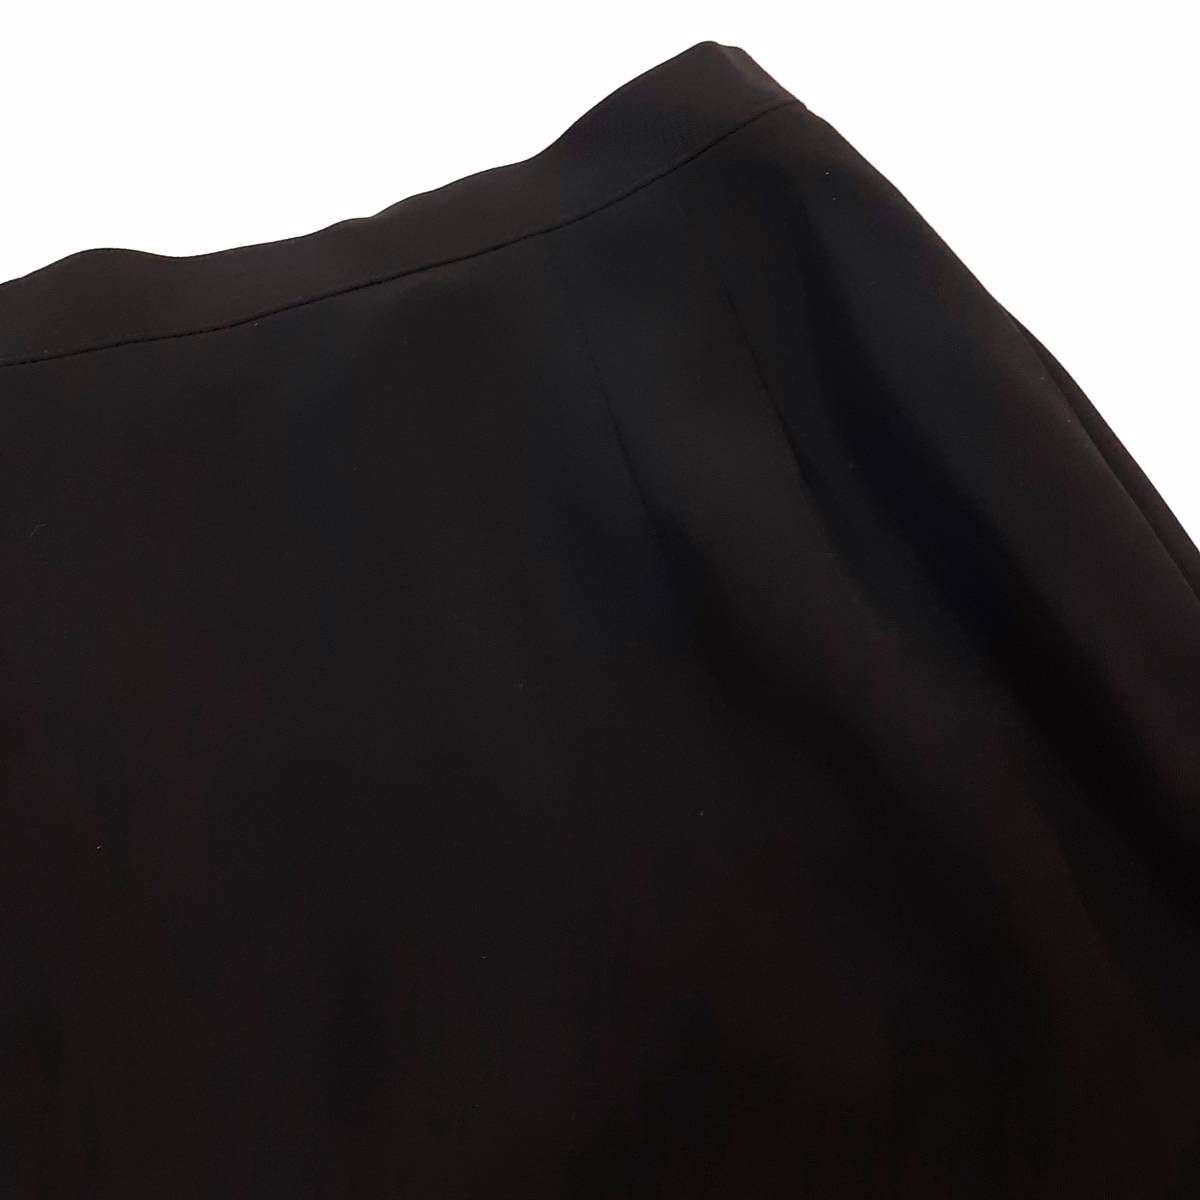 m5 прекрасный товар * бесплатная доставка *5 минут рукав гонки жакет колени длина юбка черный формальный костюм траурный костюм * женский 17 номер 4L большой размер .~ лето предмет одноцветный чёрный цвет 